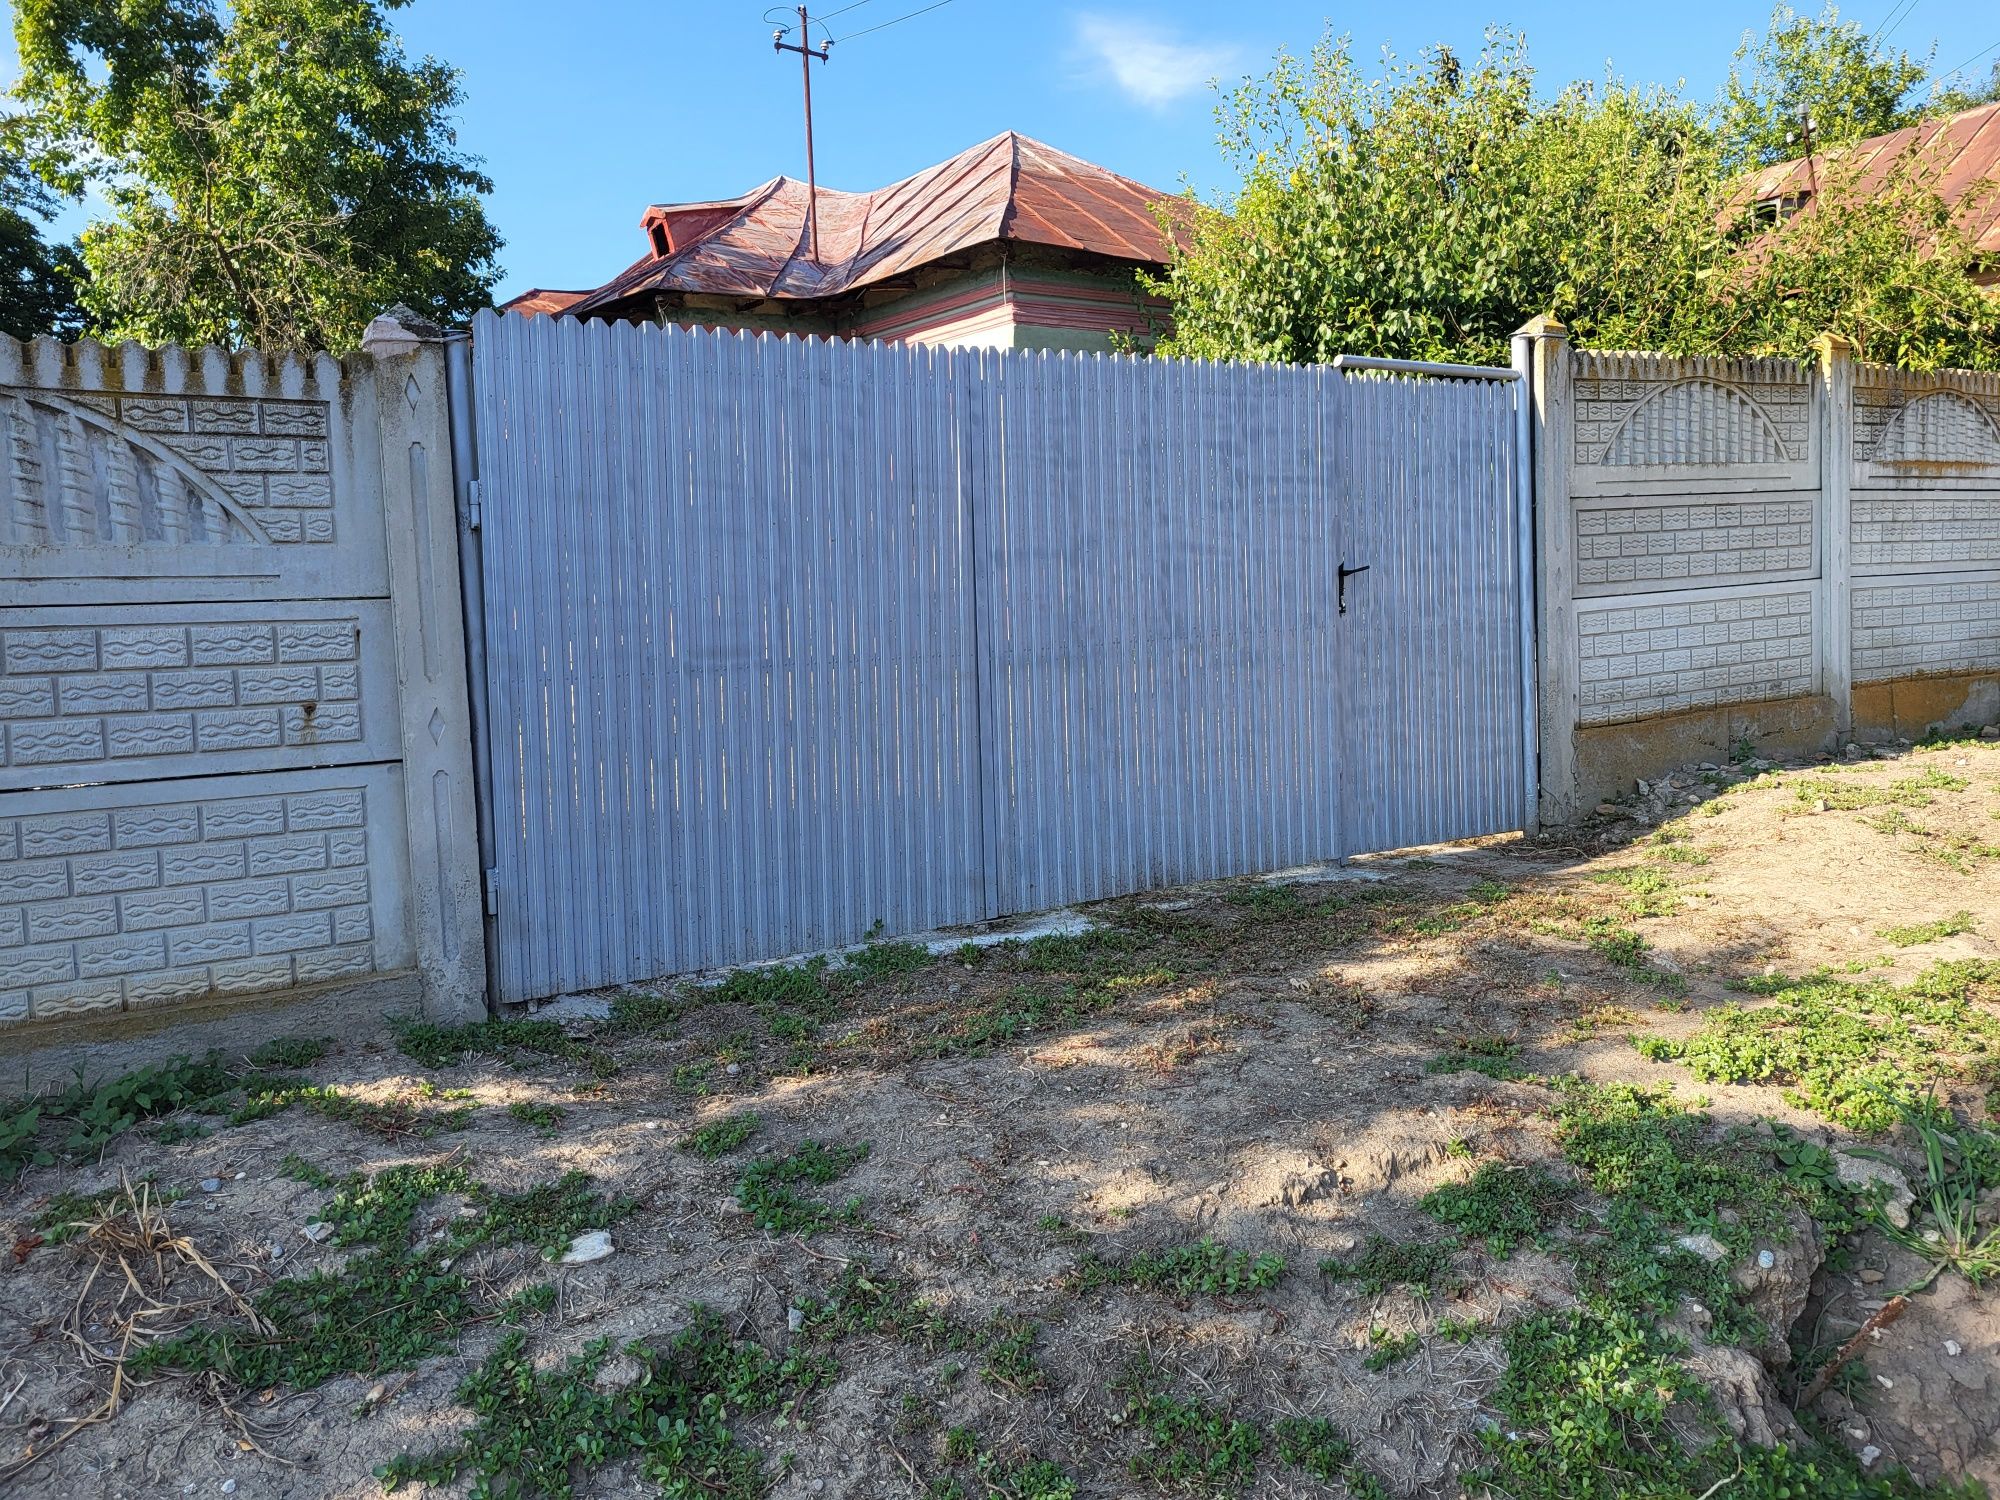 Vând casă lângă Craiova Simnicu de Sus  sat Izvor